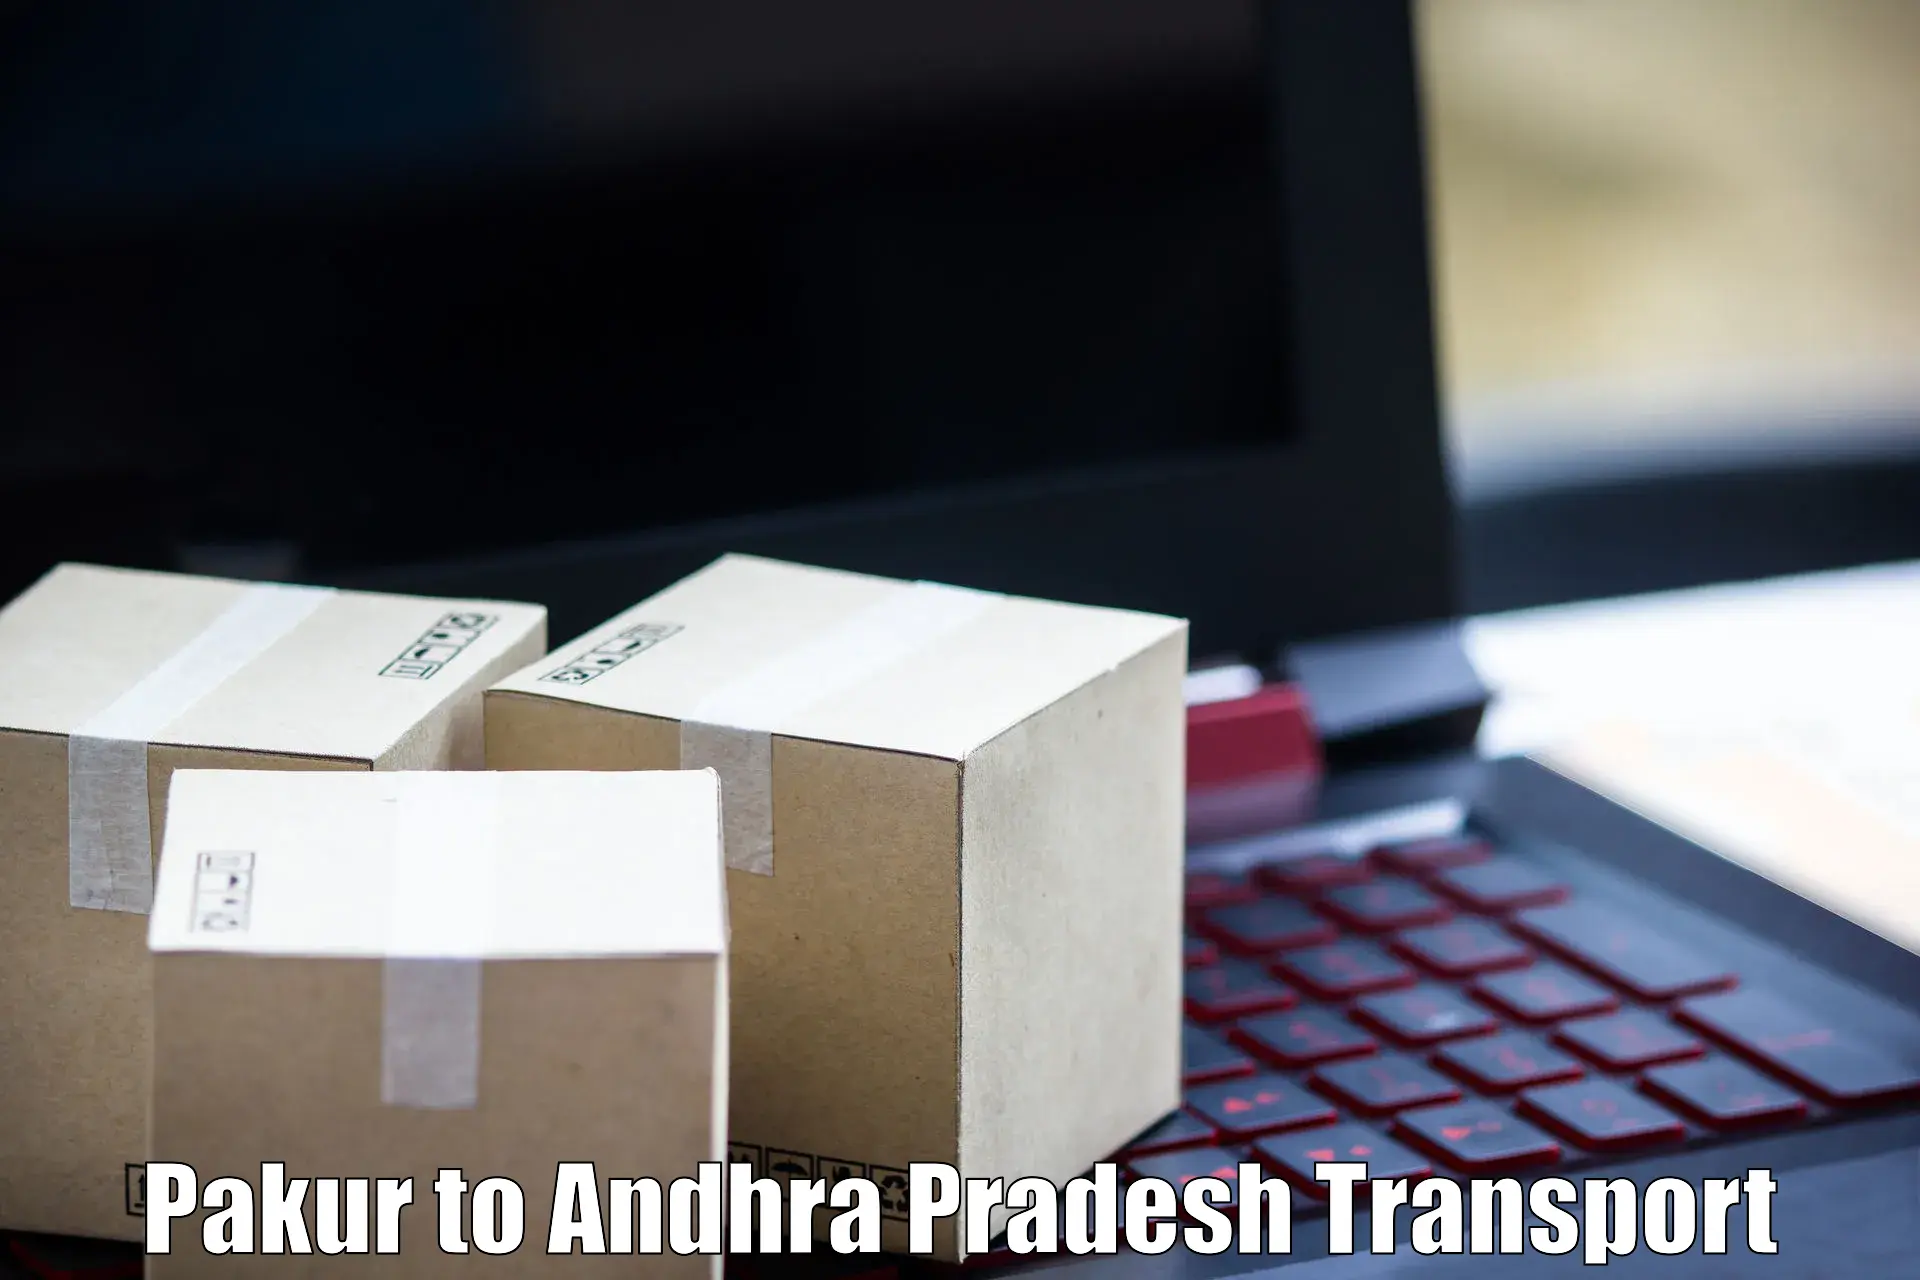 Online transport booking Pakur to Andhra Pradesh